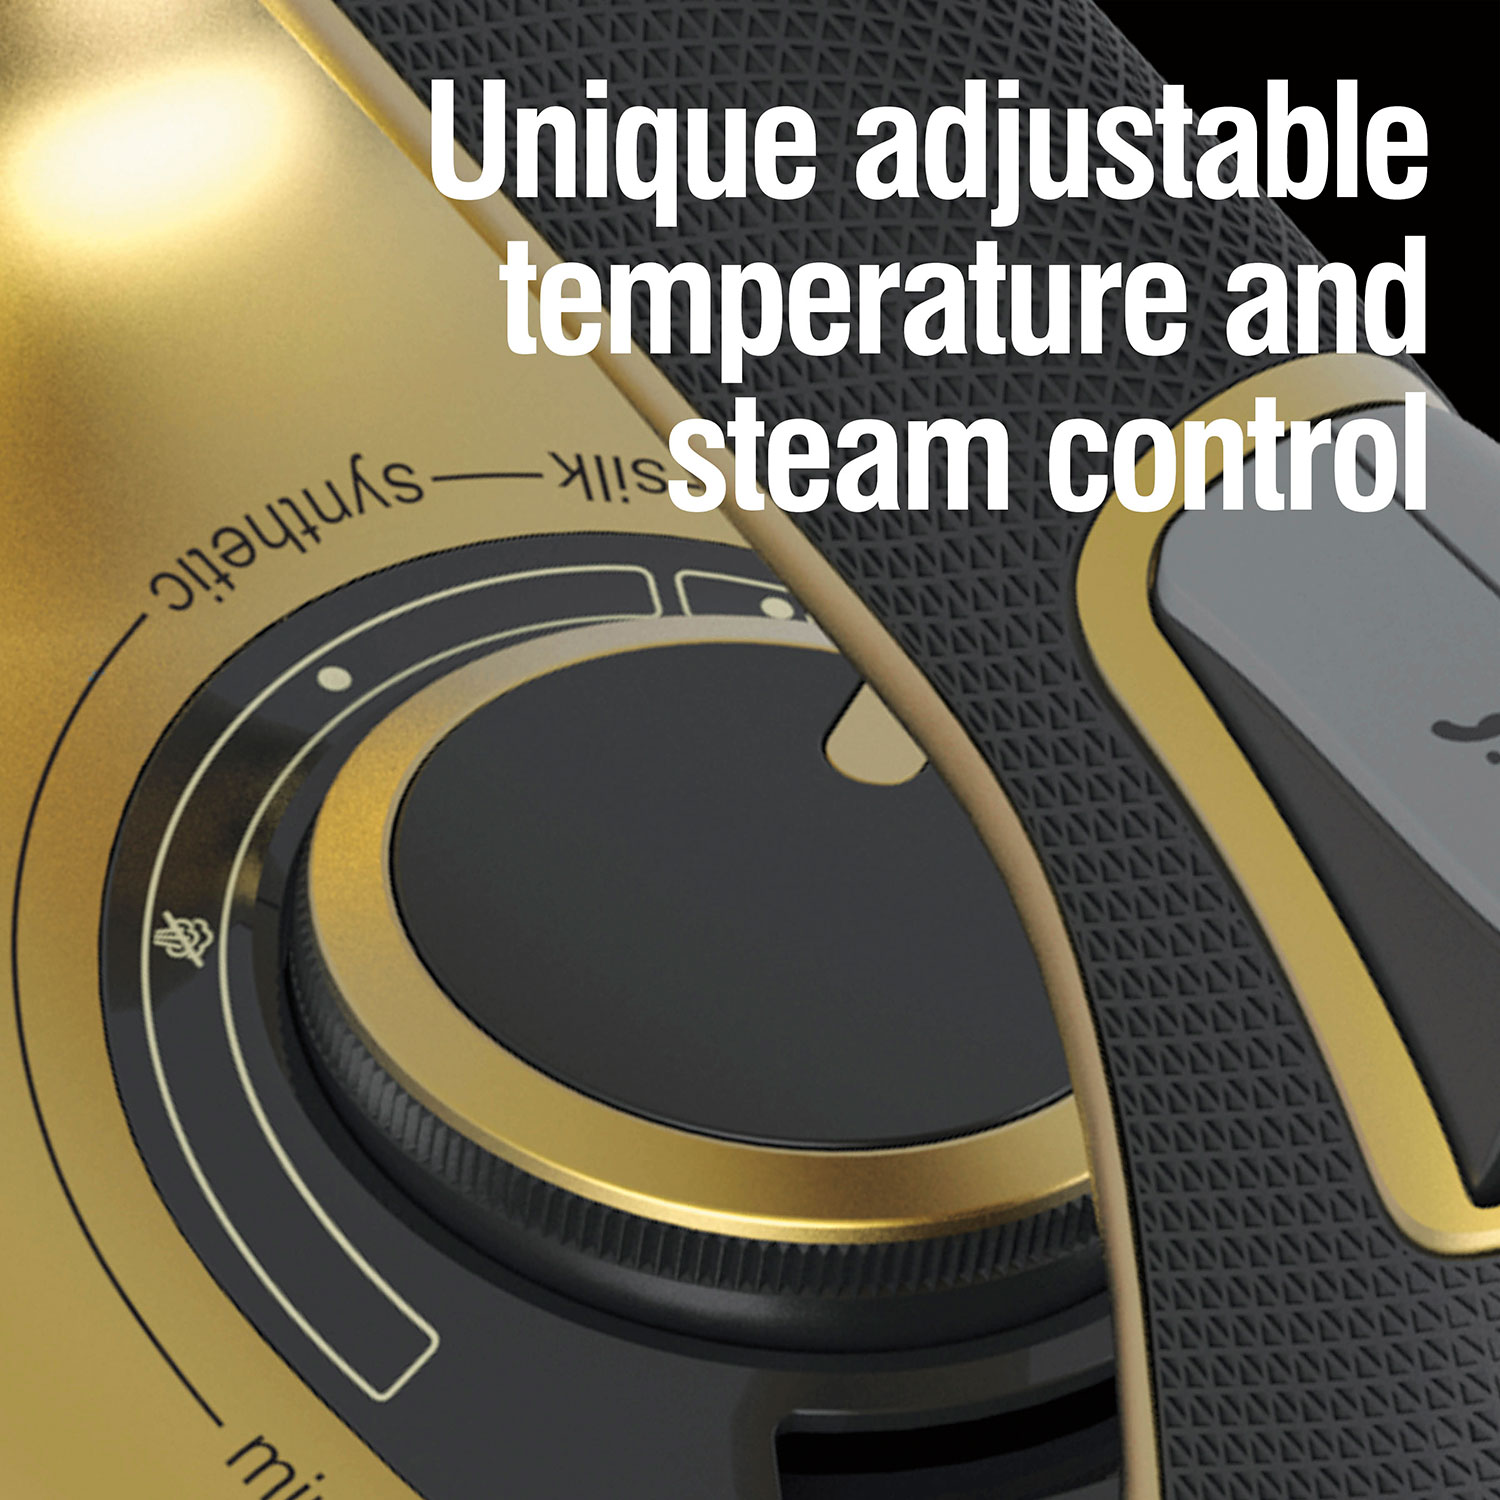 Unique adjustable temperature and steam control